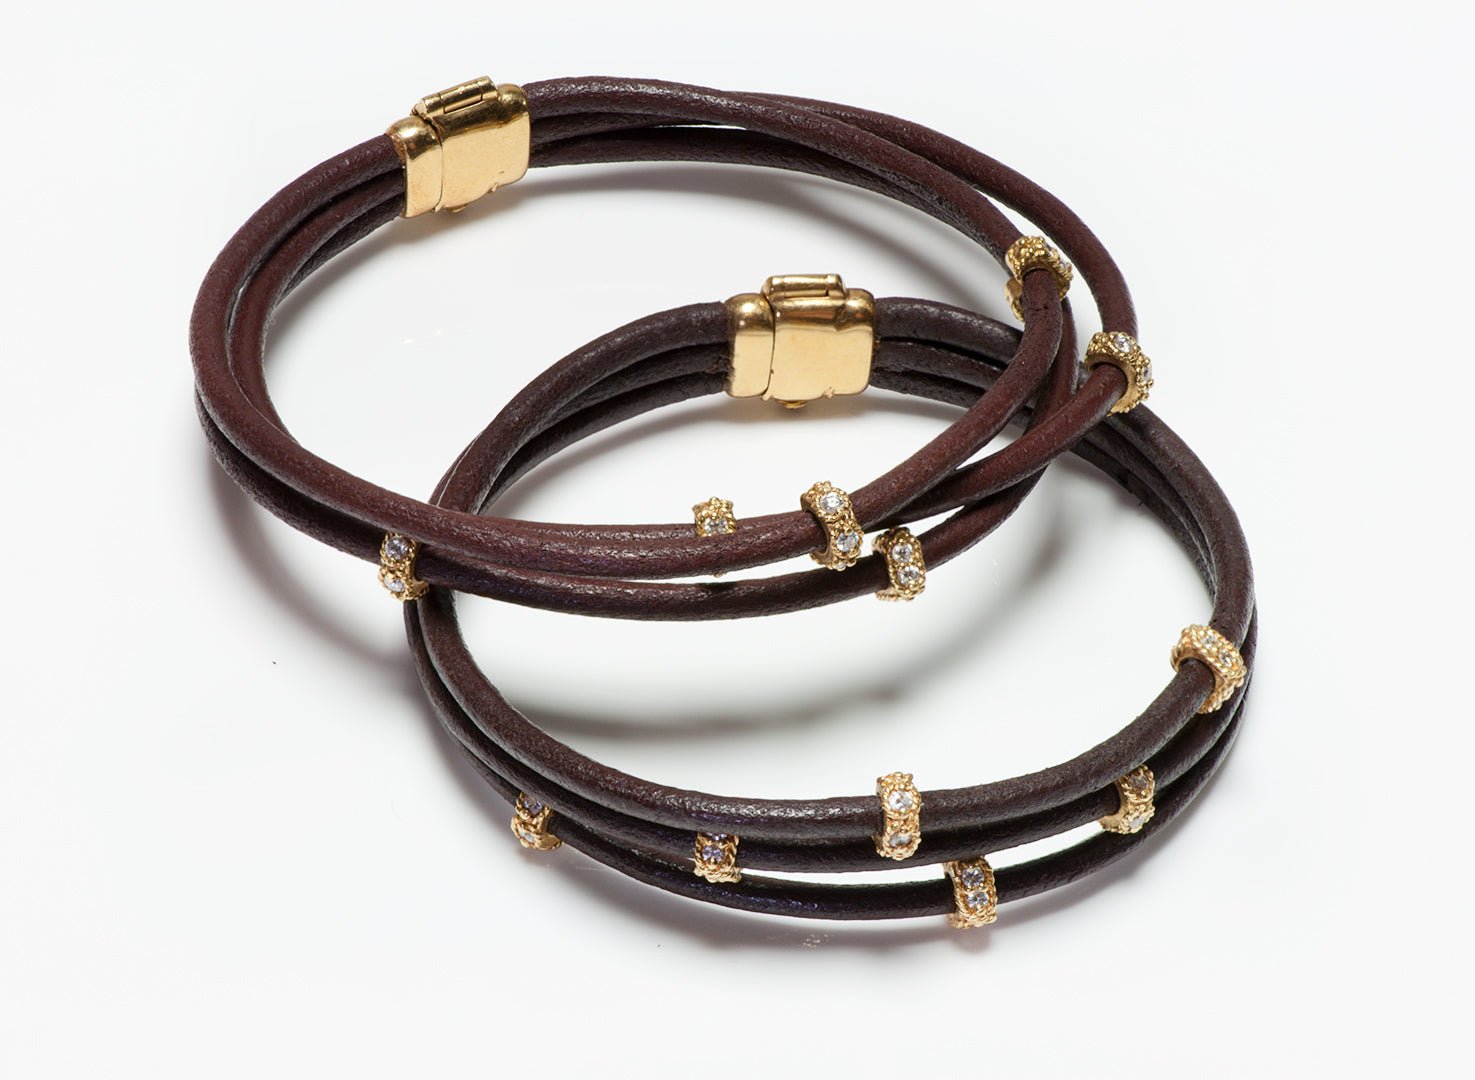 Leslie Greene 18K Gold Diamond Leather Bracelet Necklace Choker